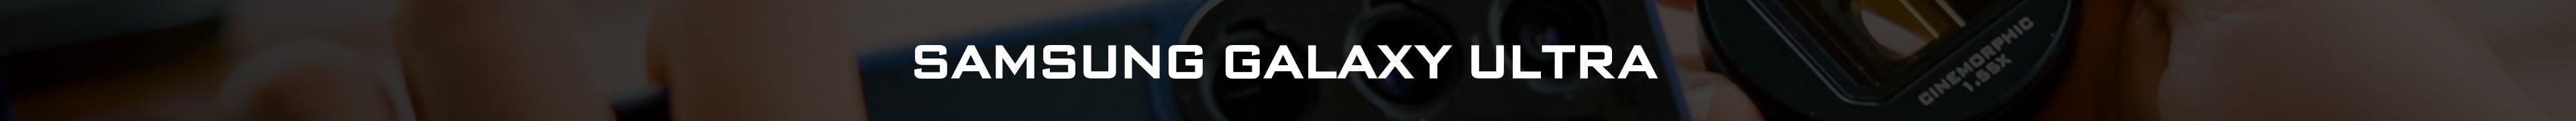 Kit de lentes Samsung Galaxy Ultra: ND, CPL, anamórfico e mais